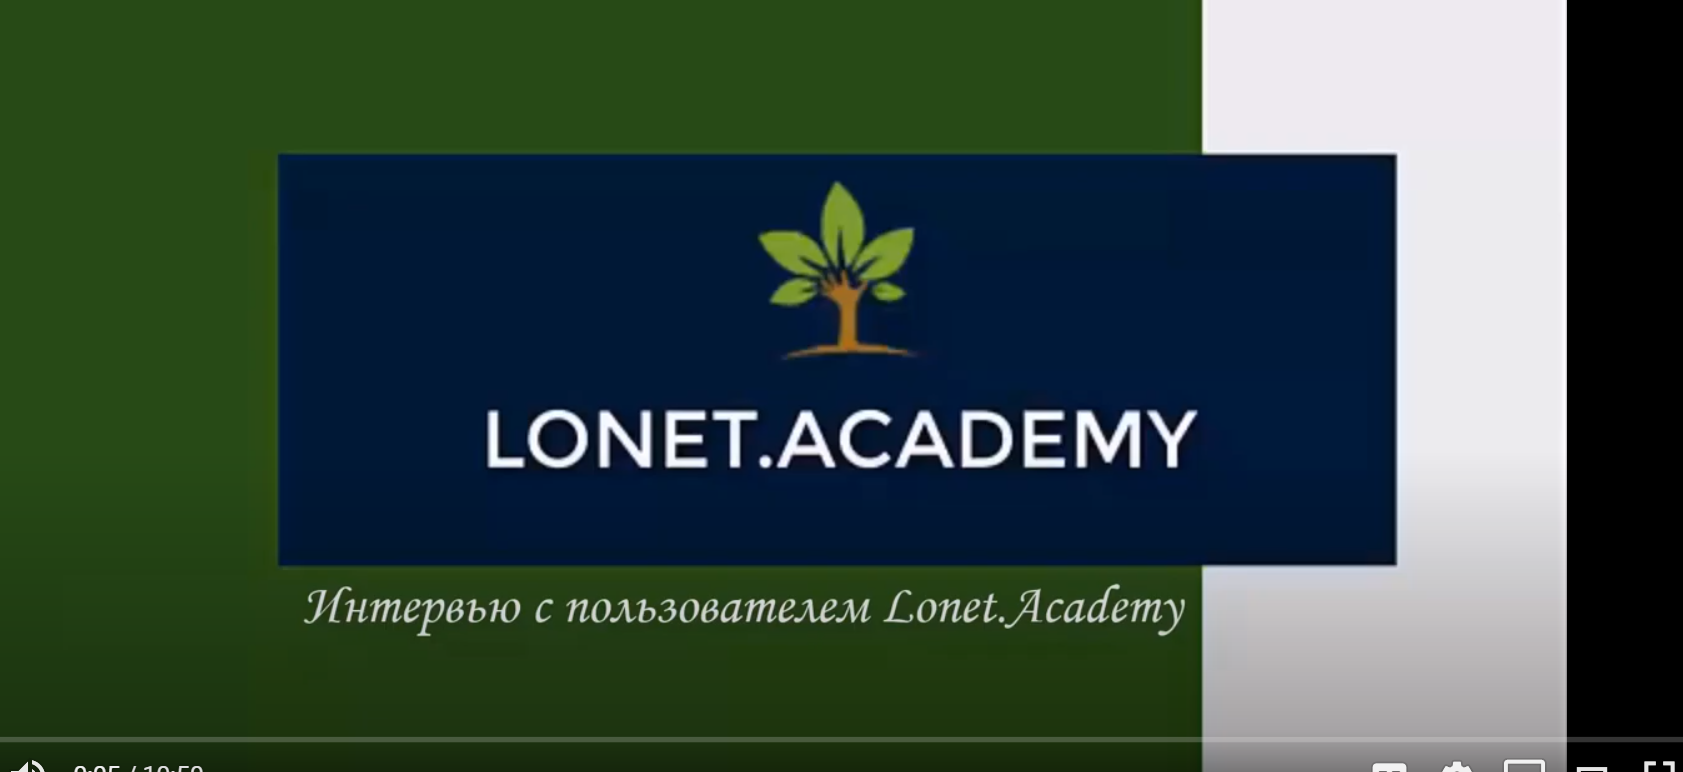 Отзыв пользователя Lonet.Academy о том, как учить английский дистанционно. 